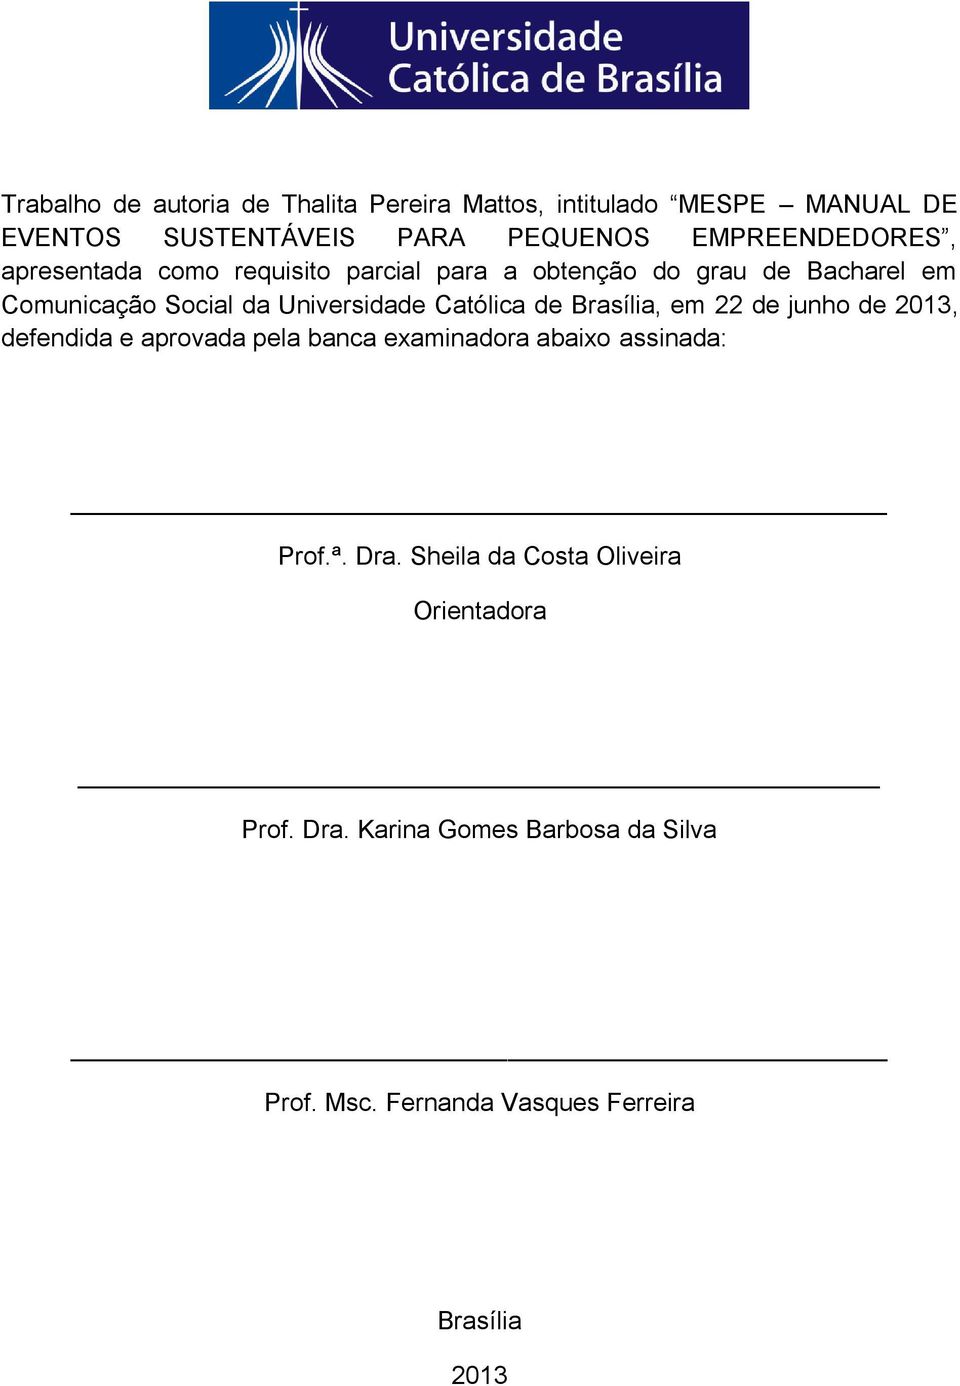 Universidade Católica de Brasília, em 22 de junho de 2013, defendida e aprovada pela banca examinadora abaixo assinada: